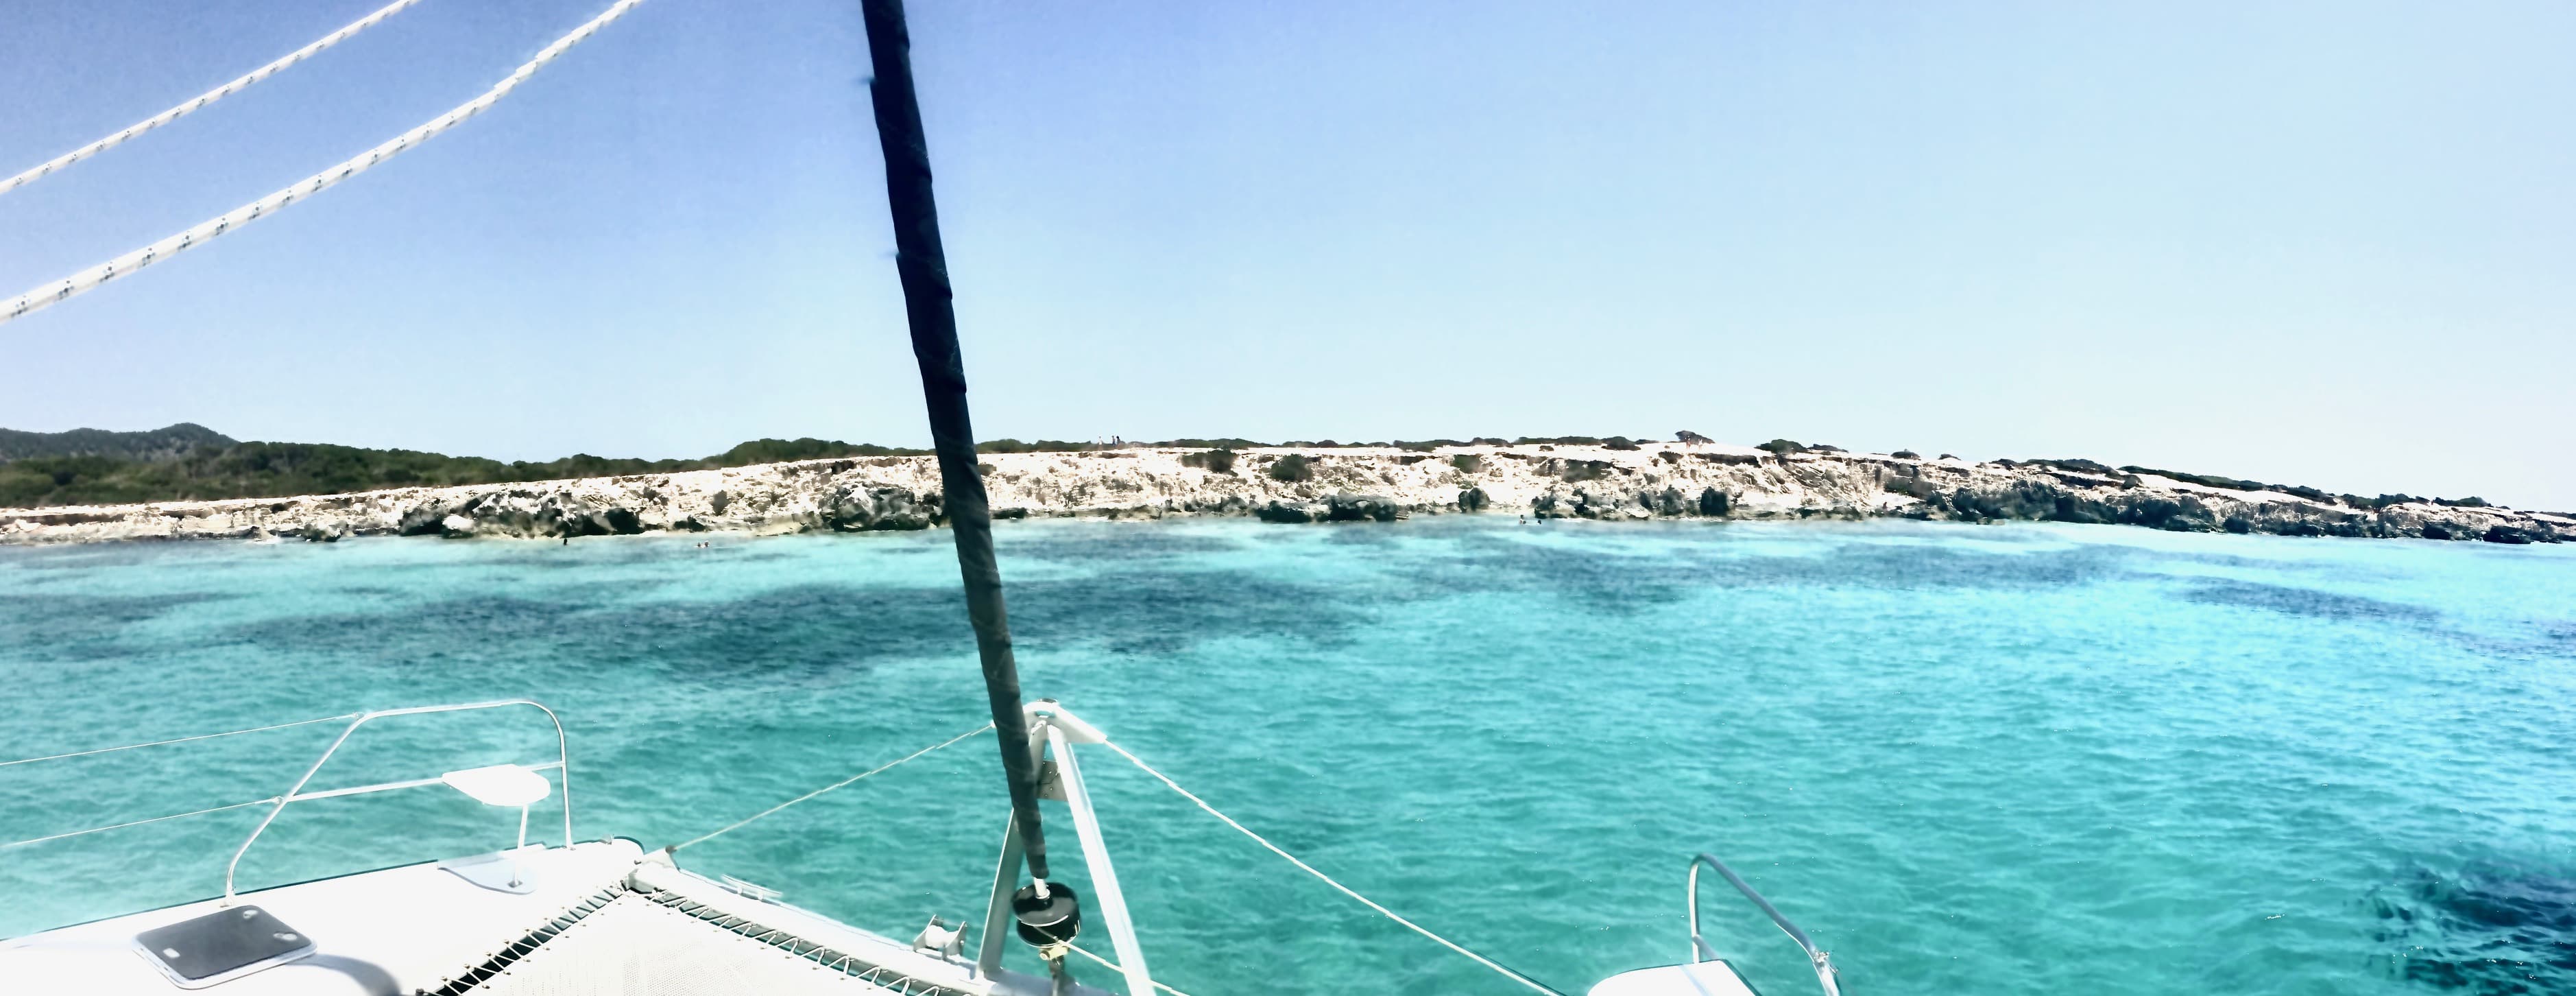 Alquiler catamarán medio día en Ibiza, calas de Salinas.